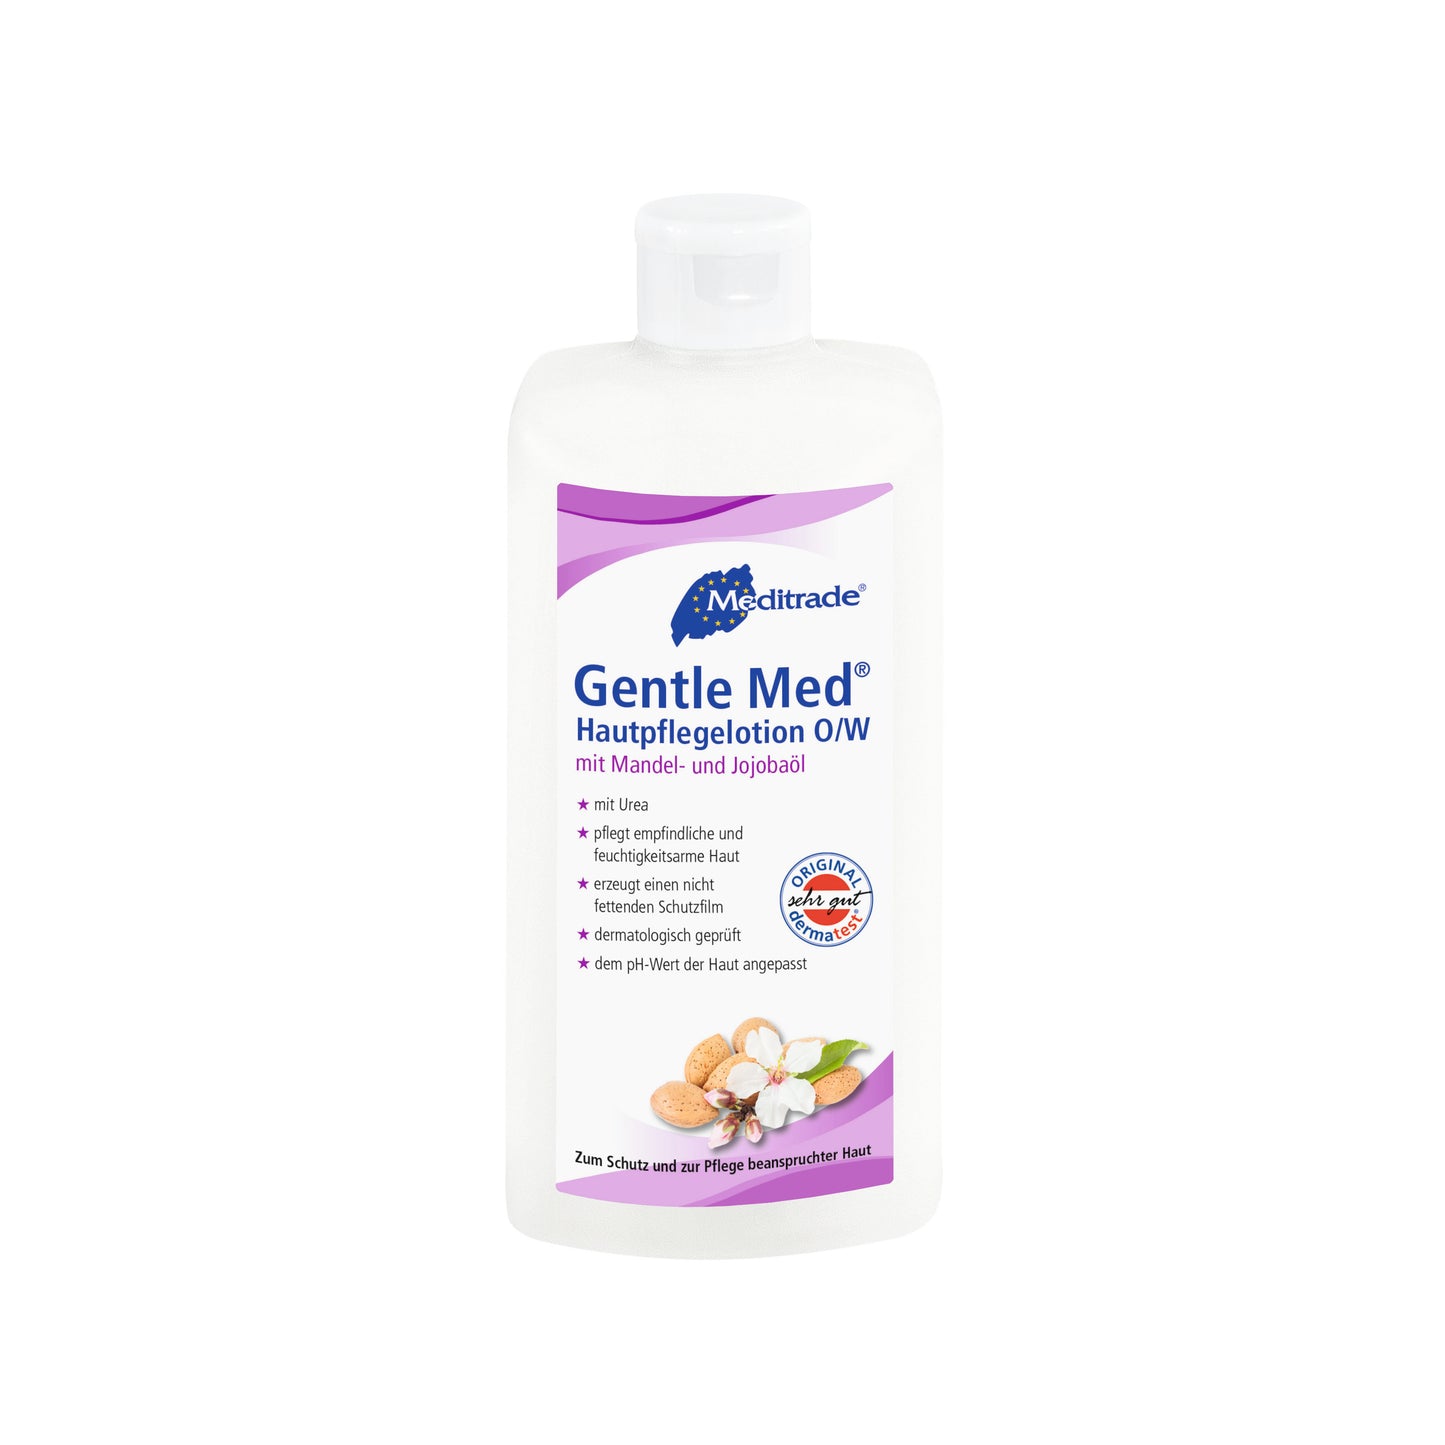 GENTLE MED® Hautpflegelotion (O/W) zum Schutz und zur Pflege 100ml / 500ml